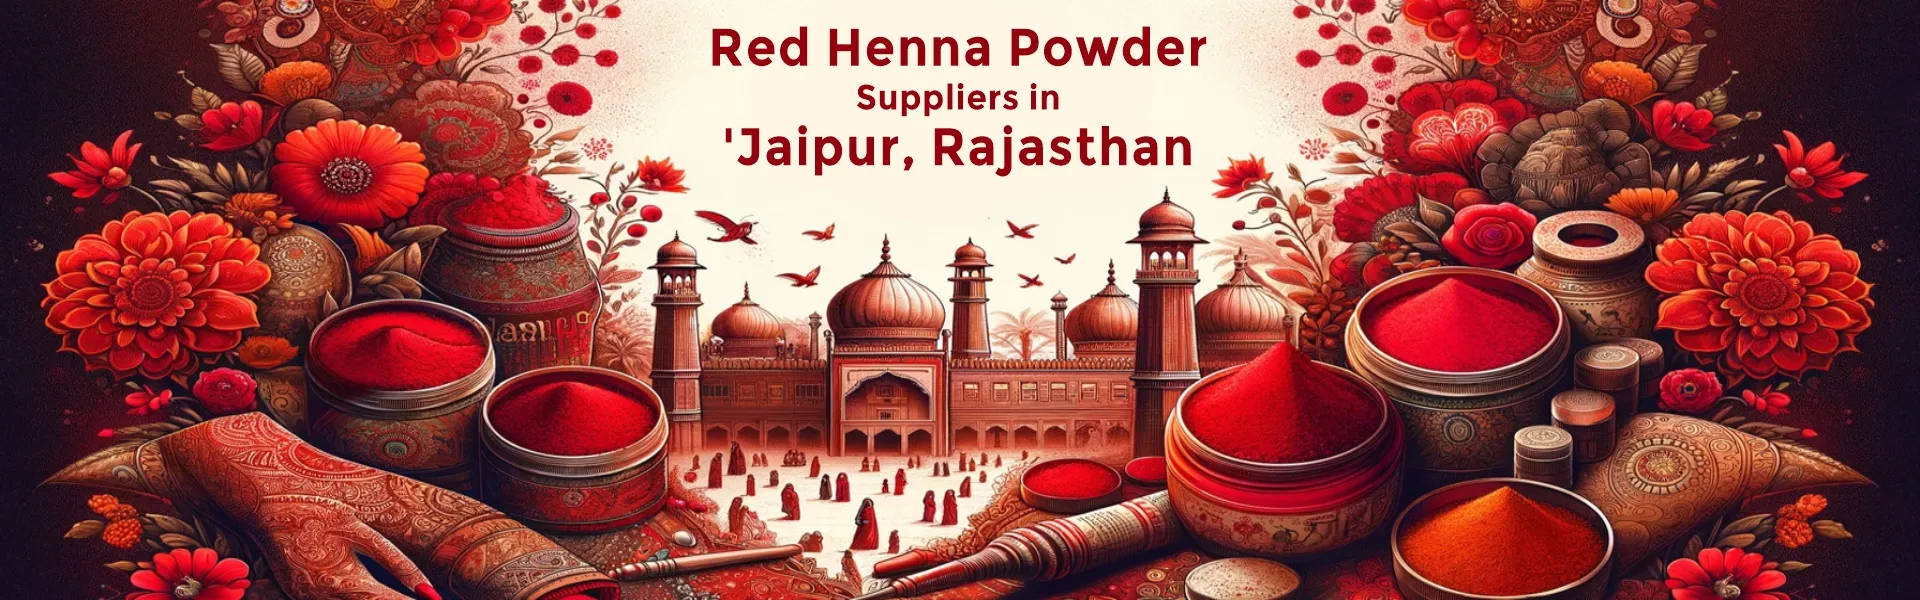 Red Henna Powder supplier - www.dkihenna.com